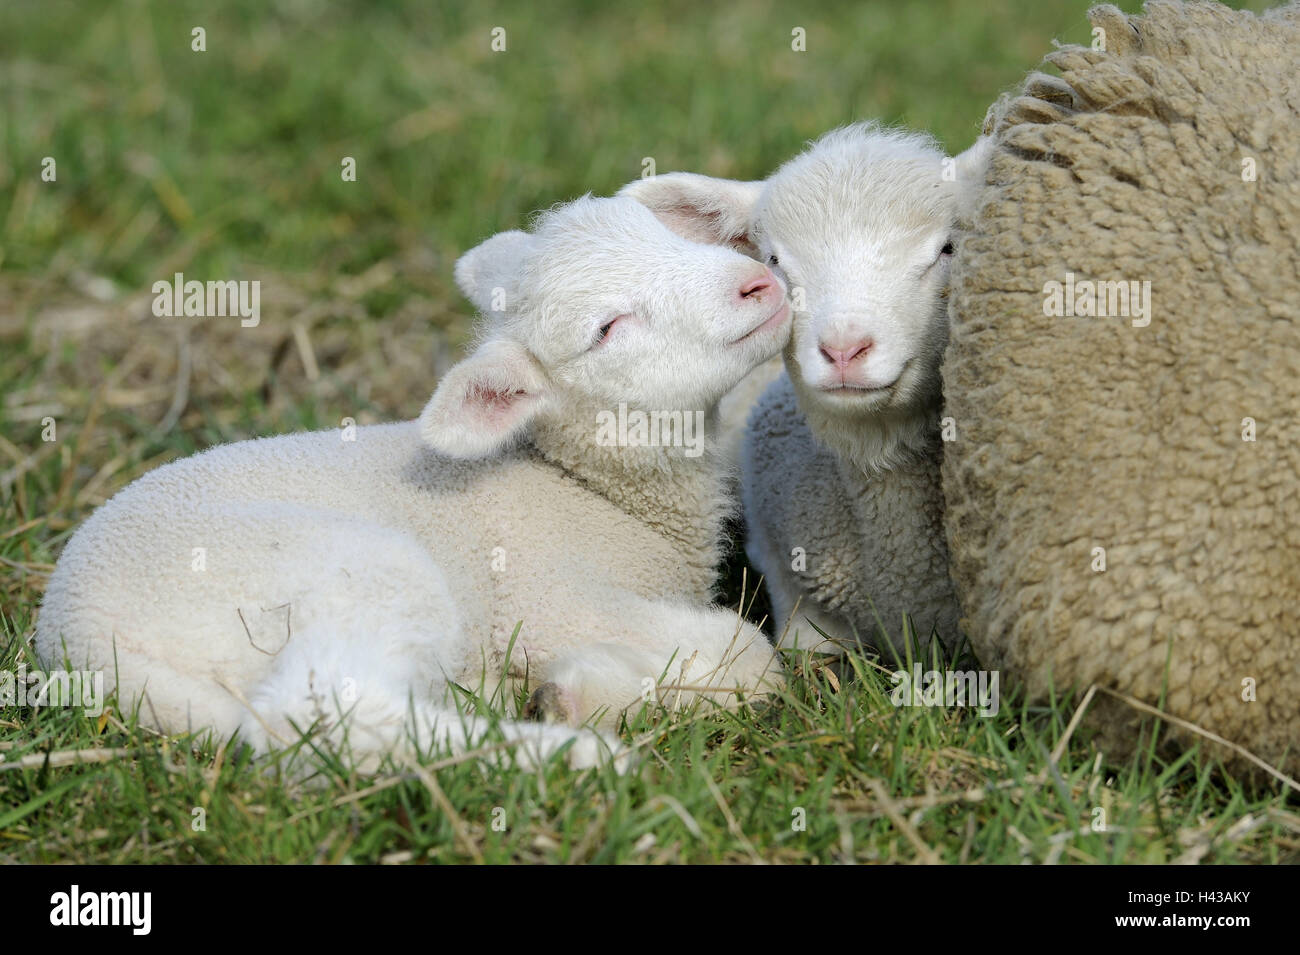 Wiese, Merino-Schafe, Lämmer, Mutter Tier schmiegen sich Lüge, Detail, Tiere,  Säugetiere, nutzen Tiere, Schafe, Schafrasse, landen Schaf, Merino,  Jungtiere, Weide, außerhalb der Landwirtschaft, Vieh, Zucht, Haustiere,  Naht, Sicherheit, kuscheln ...